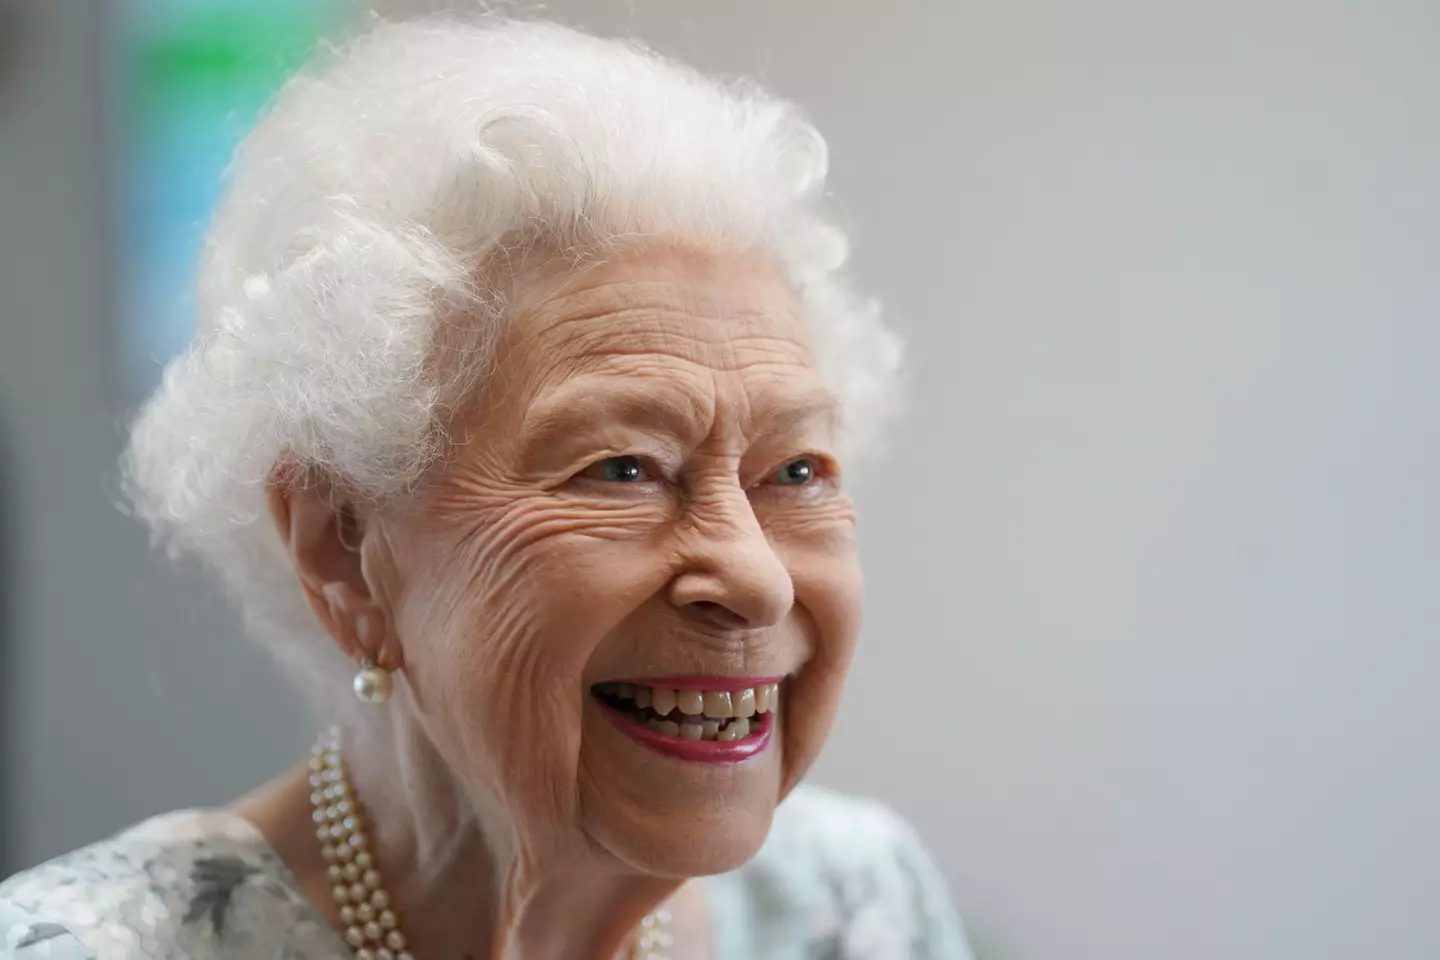 Queen Elizabeth II passed away on 8 September.